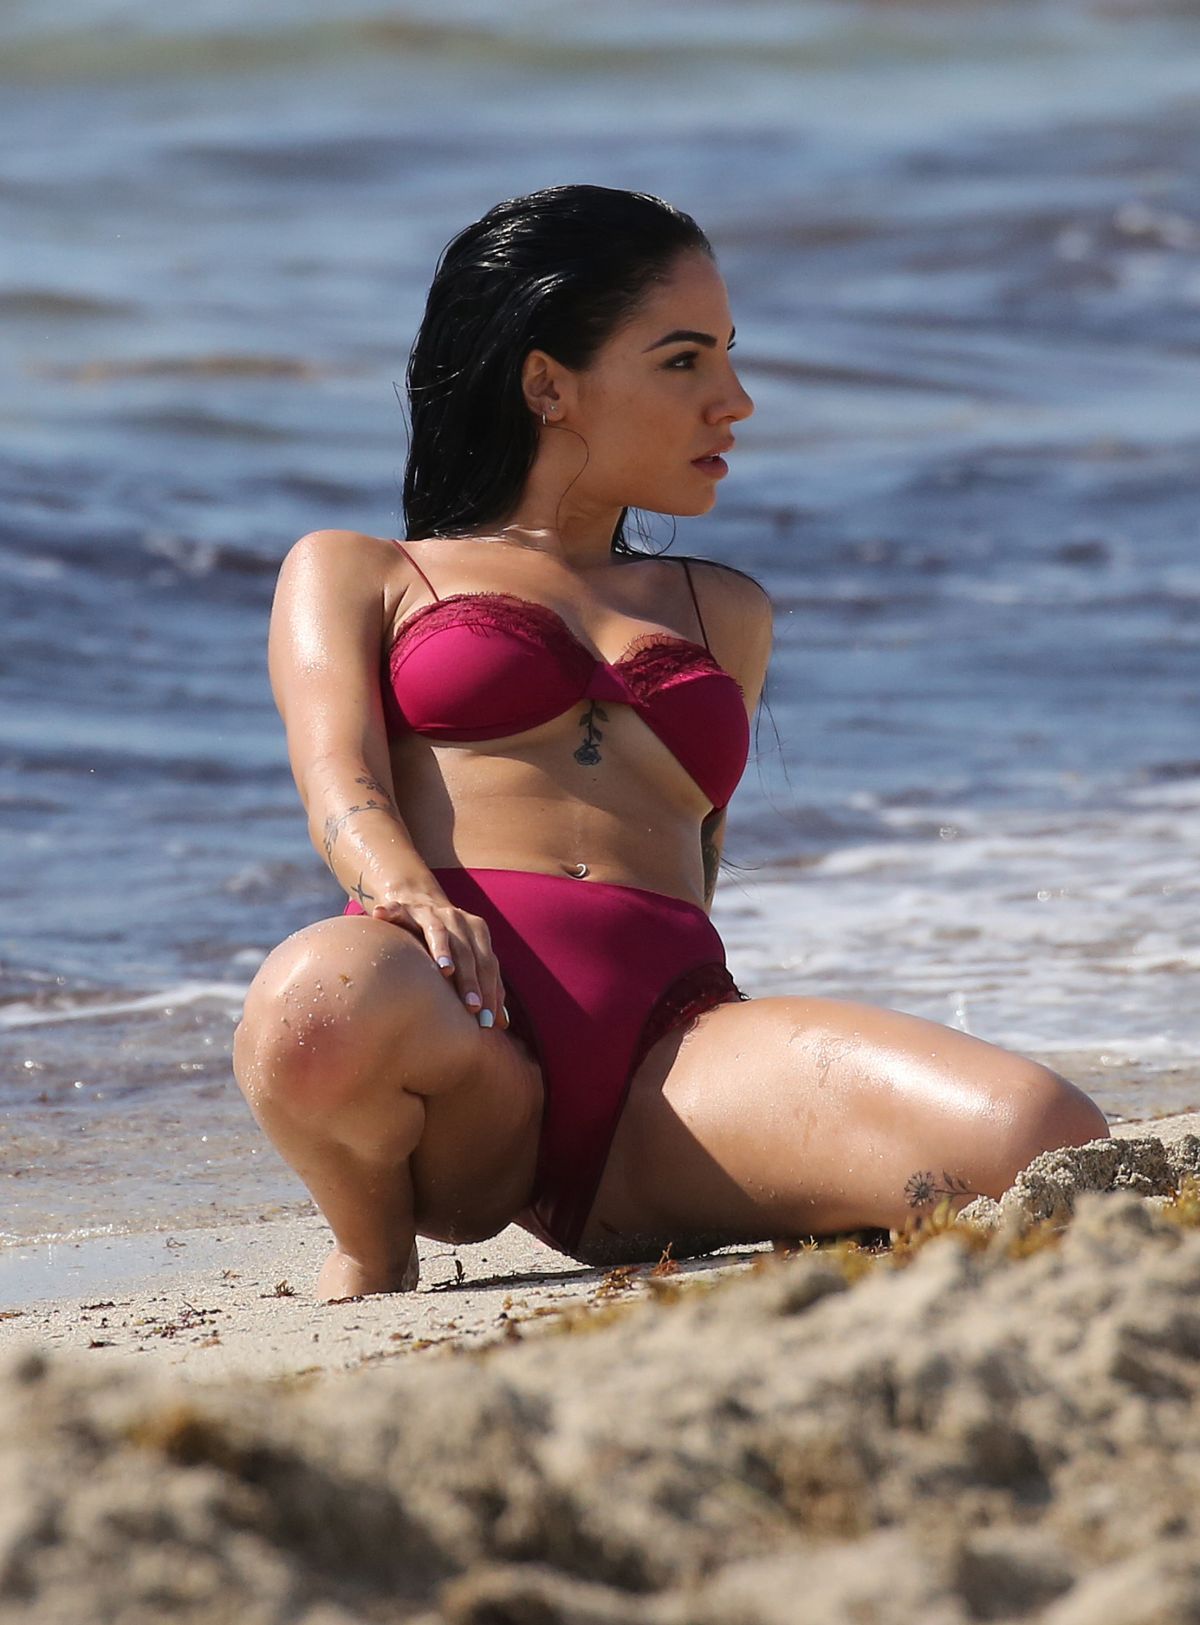 GIULIA DE LELLIS in Bikini on the Beach in Miami 04/29/2019.